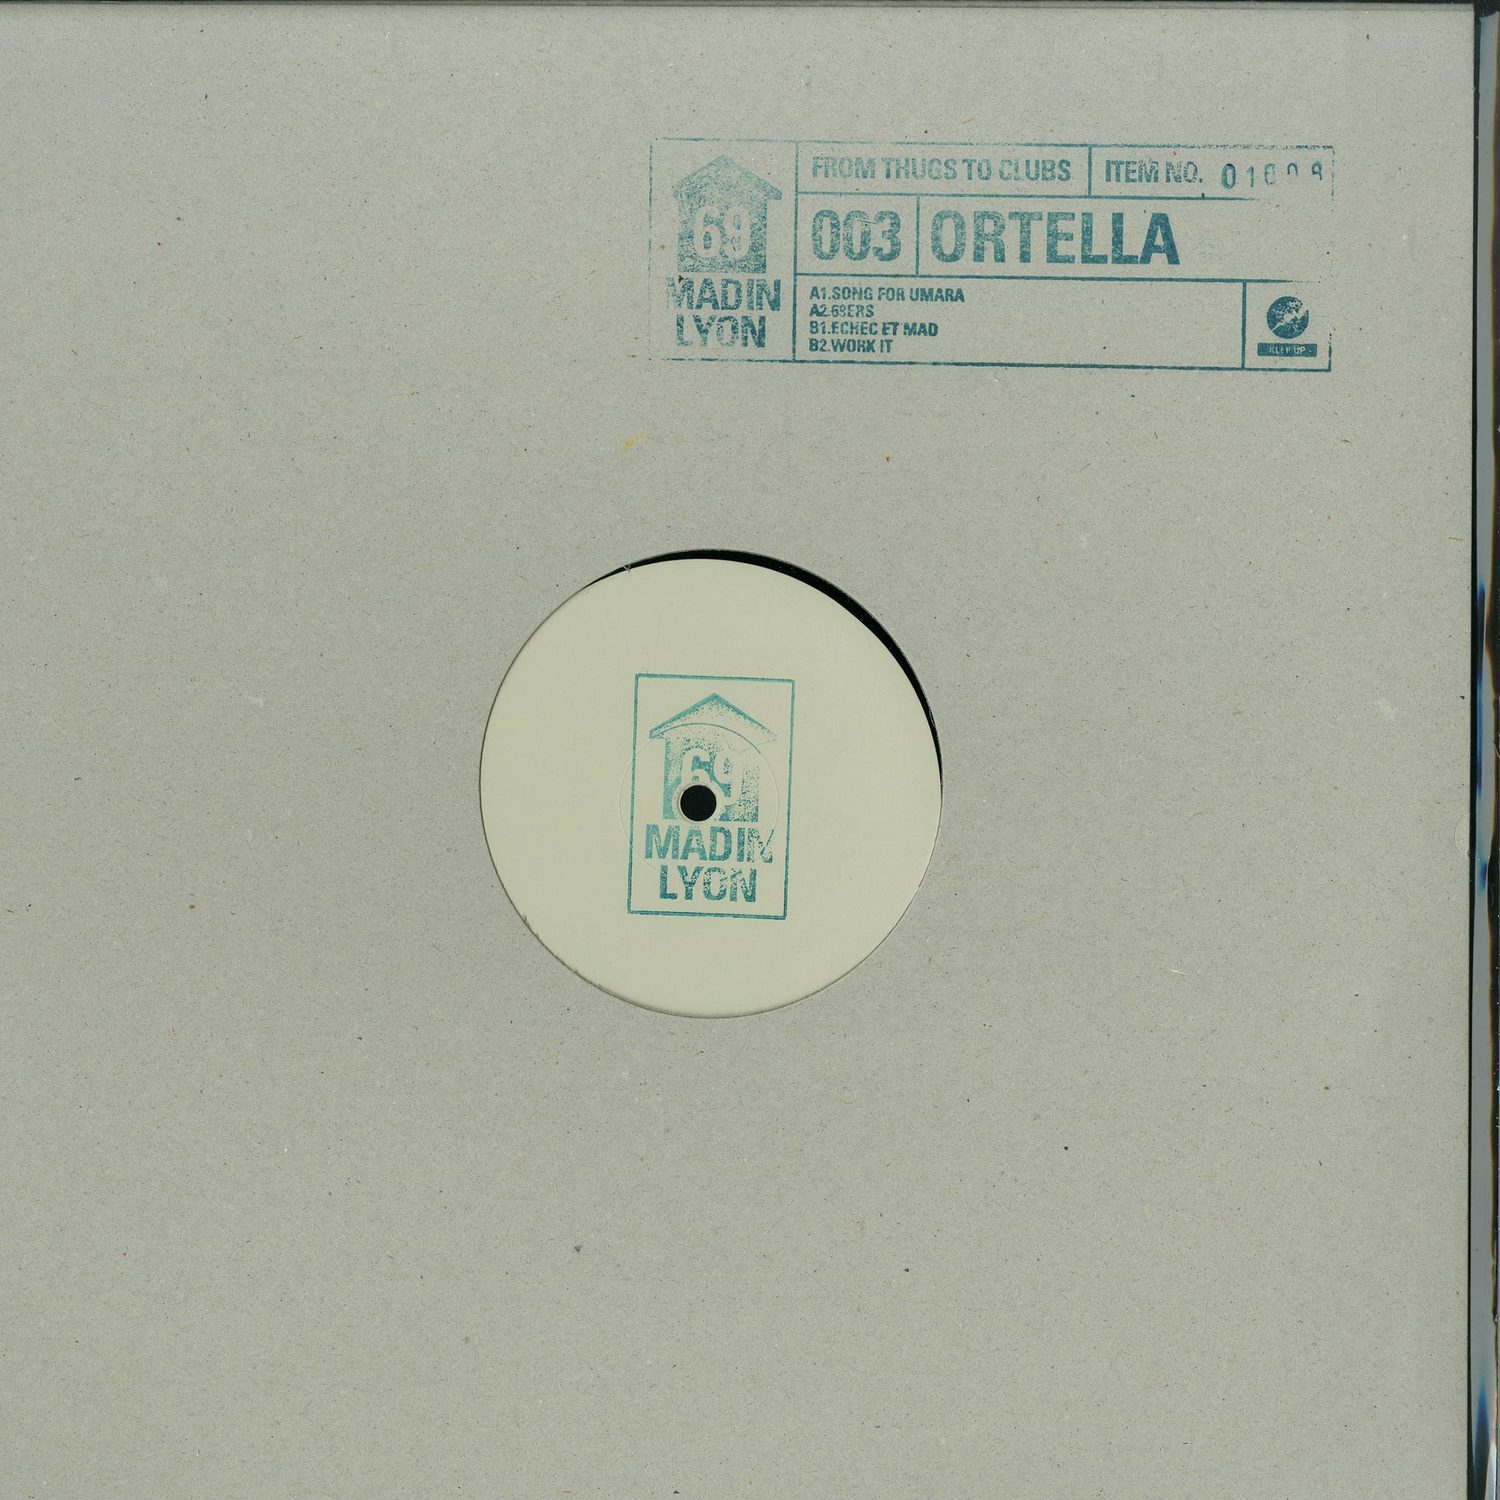 Ortella - 69003